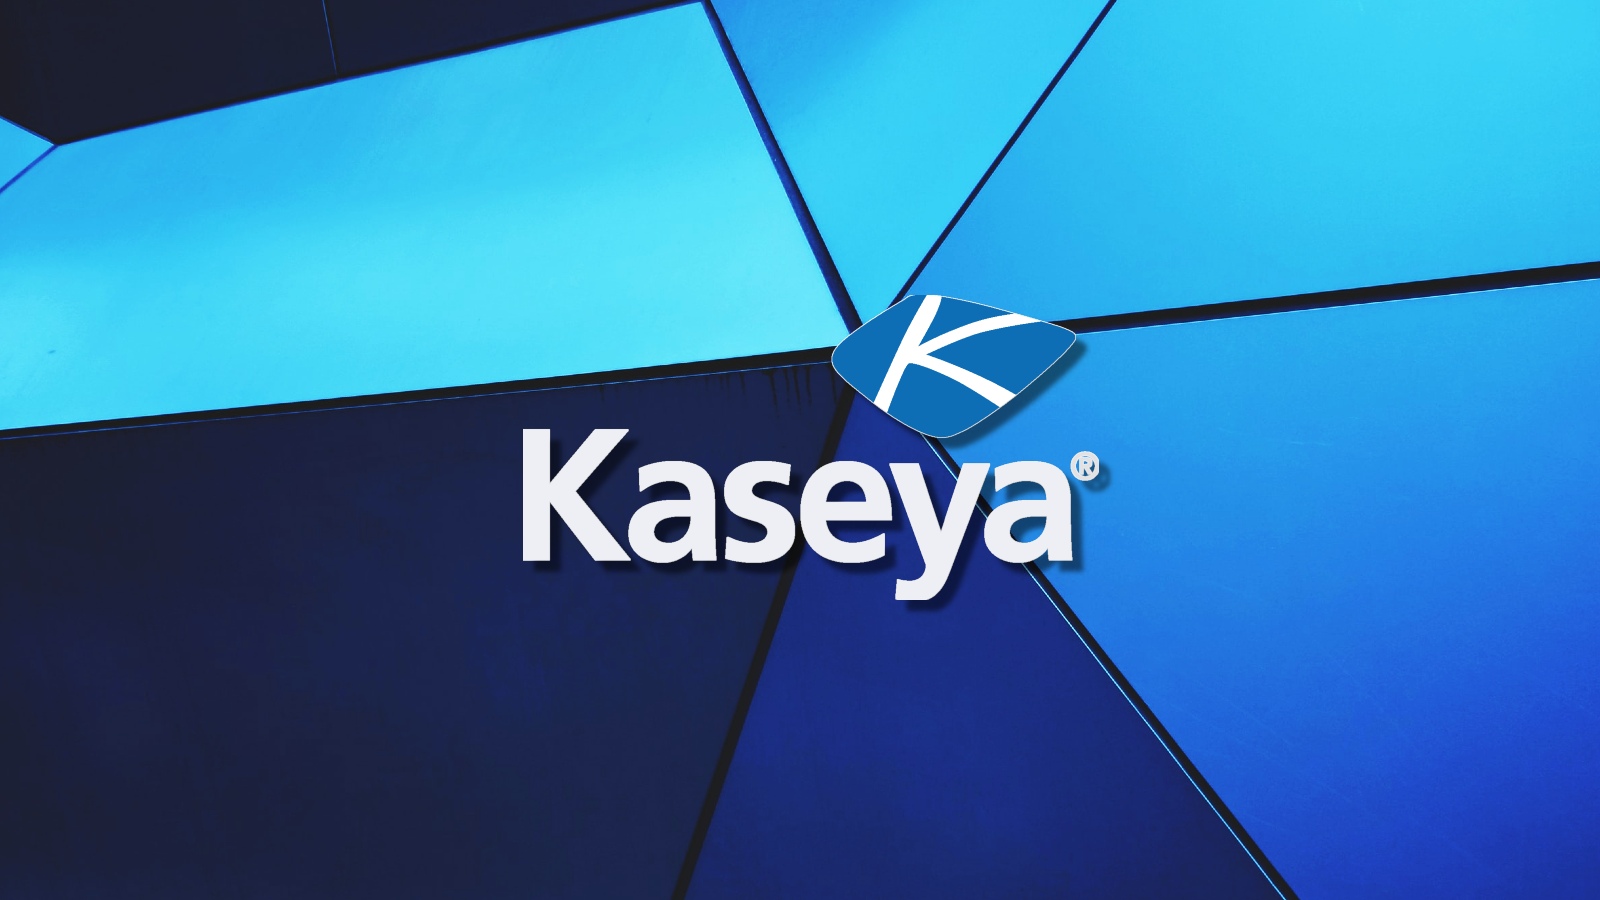 Kaseya warns of phishing campaign pushing fake security updates